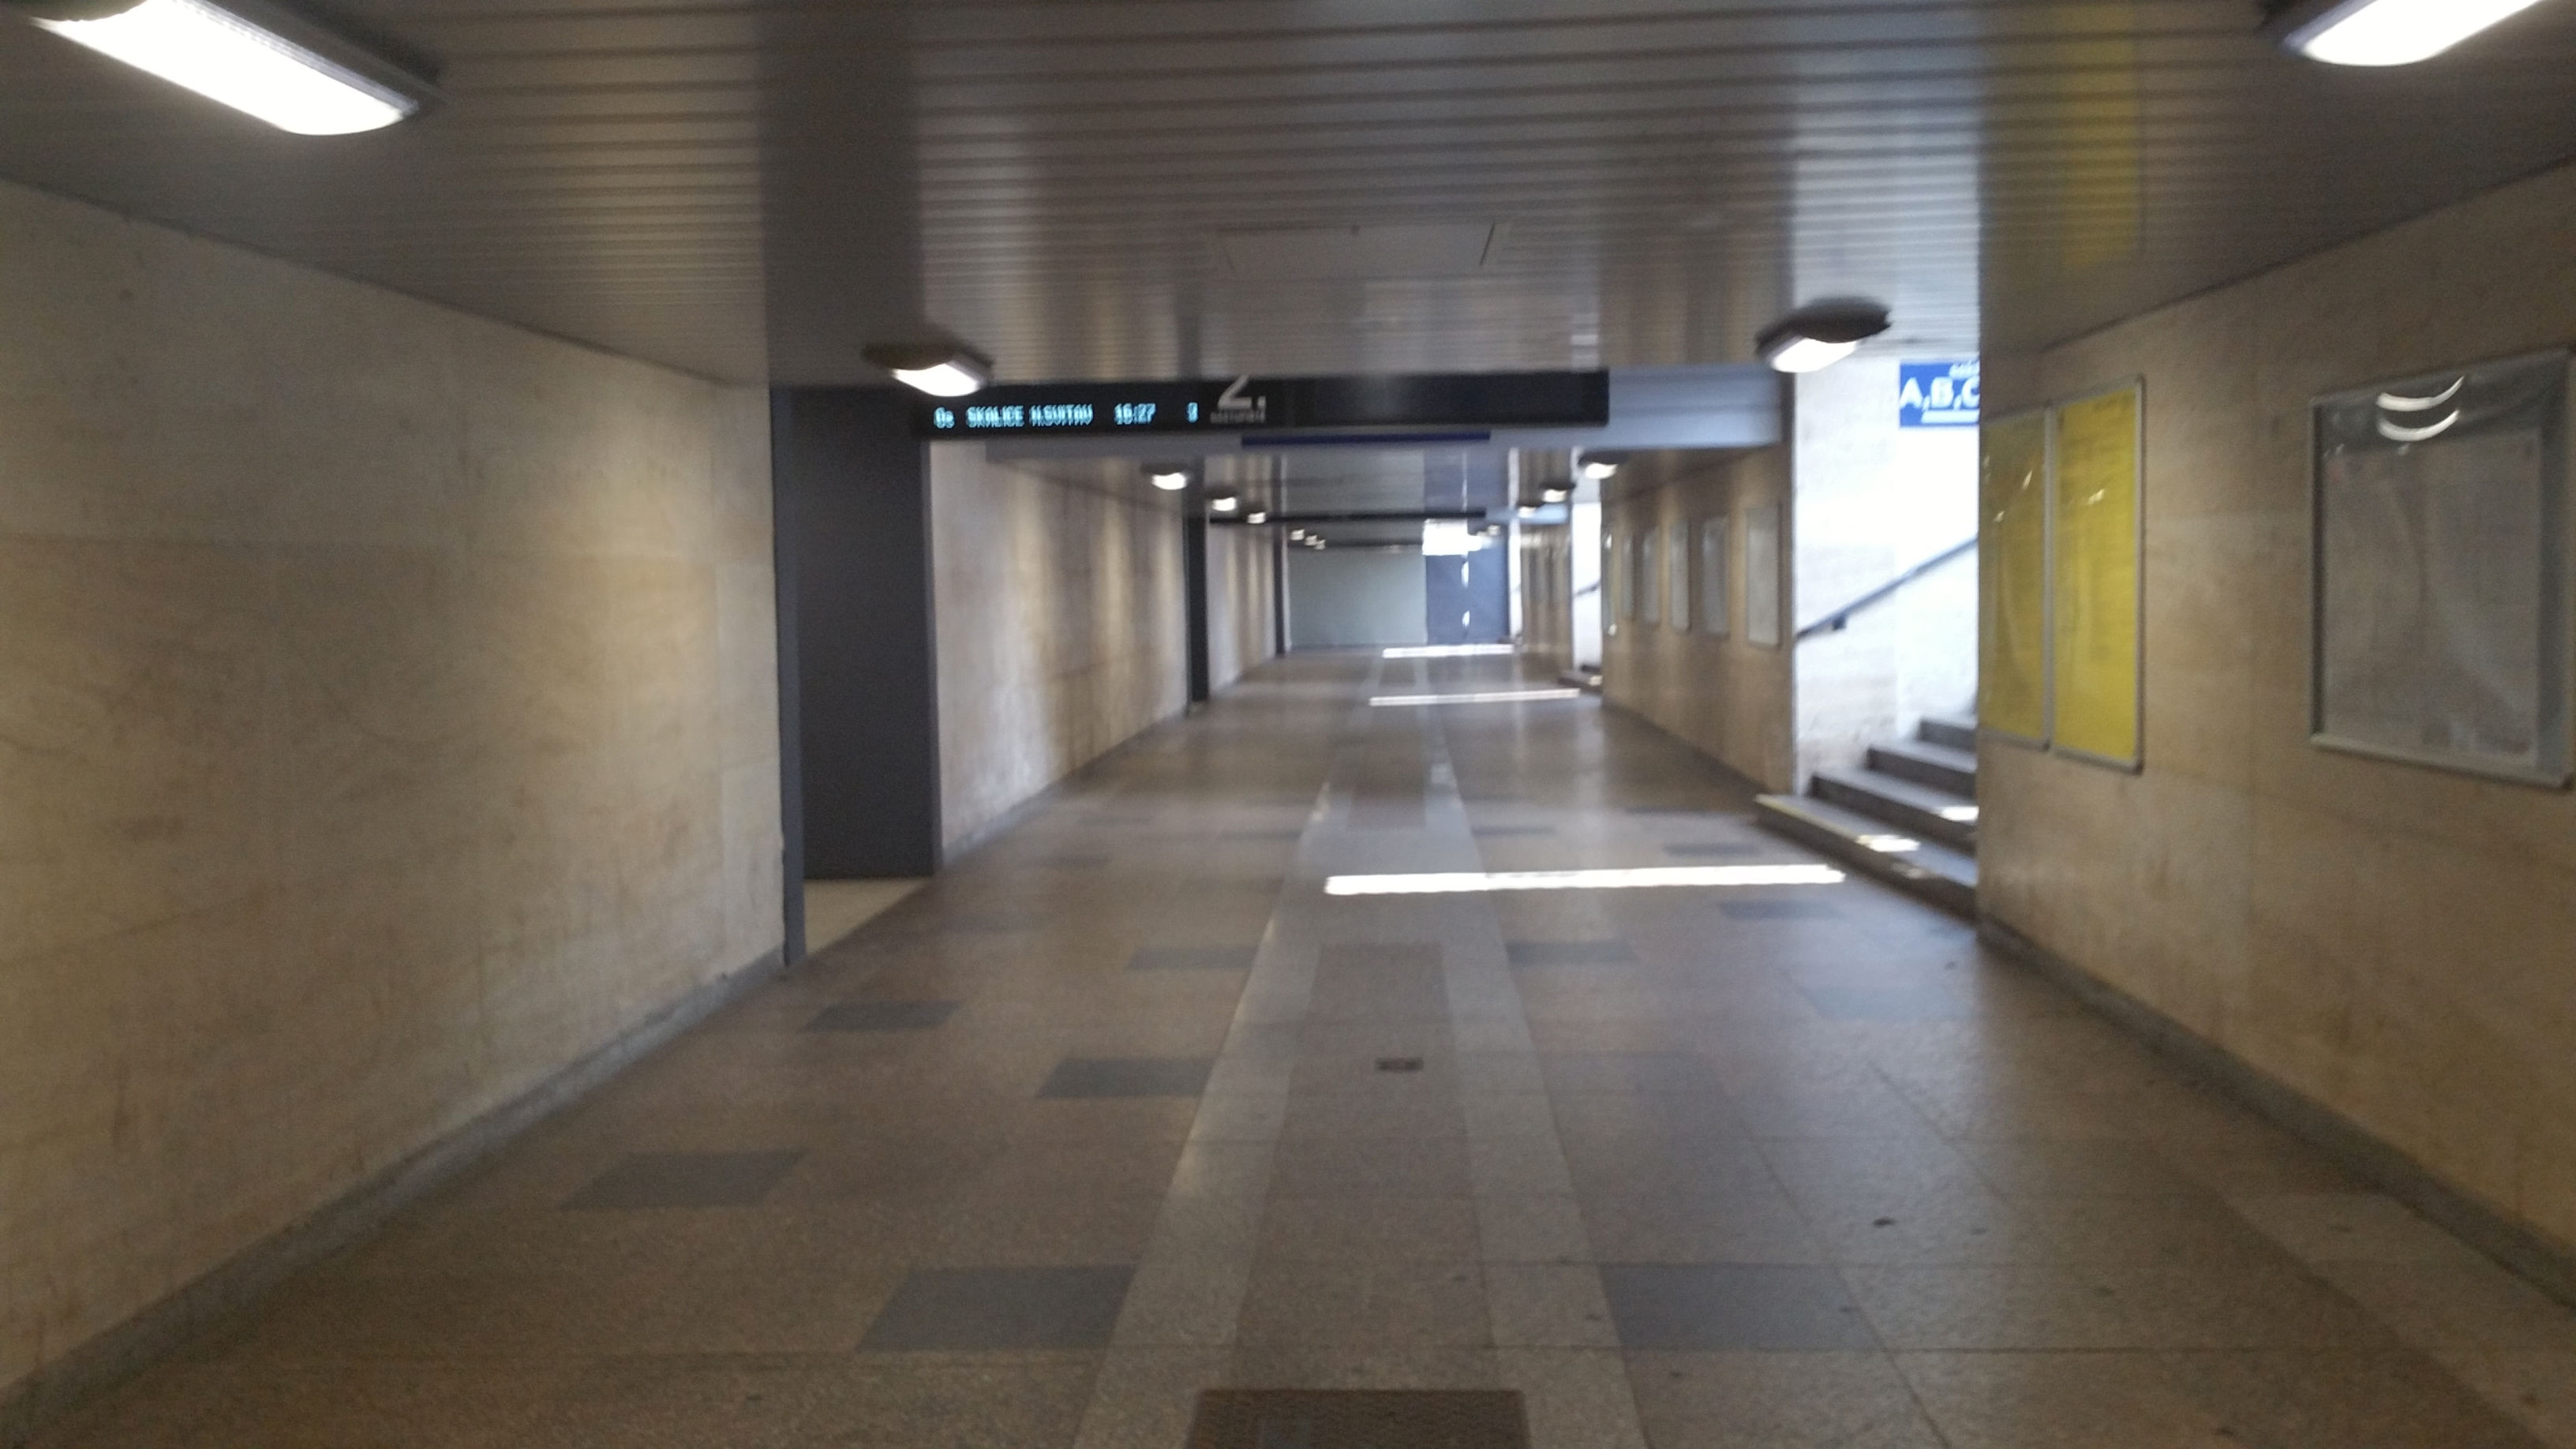 Podchod pod Horním nádražím v Brně